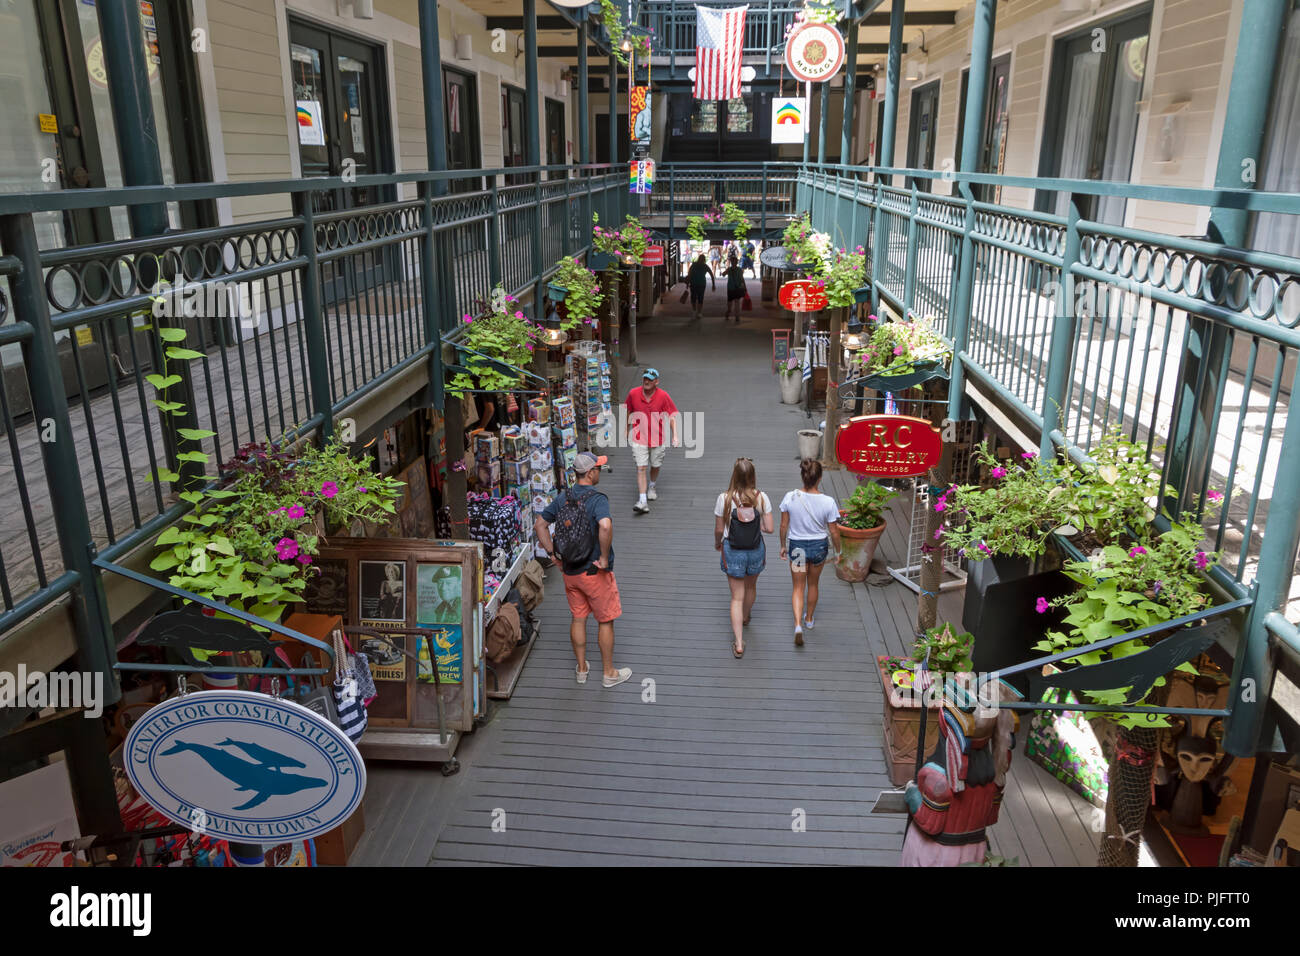 Les touristes dans Whaler's Wharf shopping mall, Provincetown, Cape Cod, Massachusetts. Banque D'Images